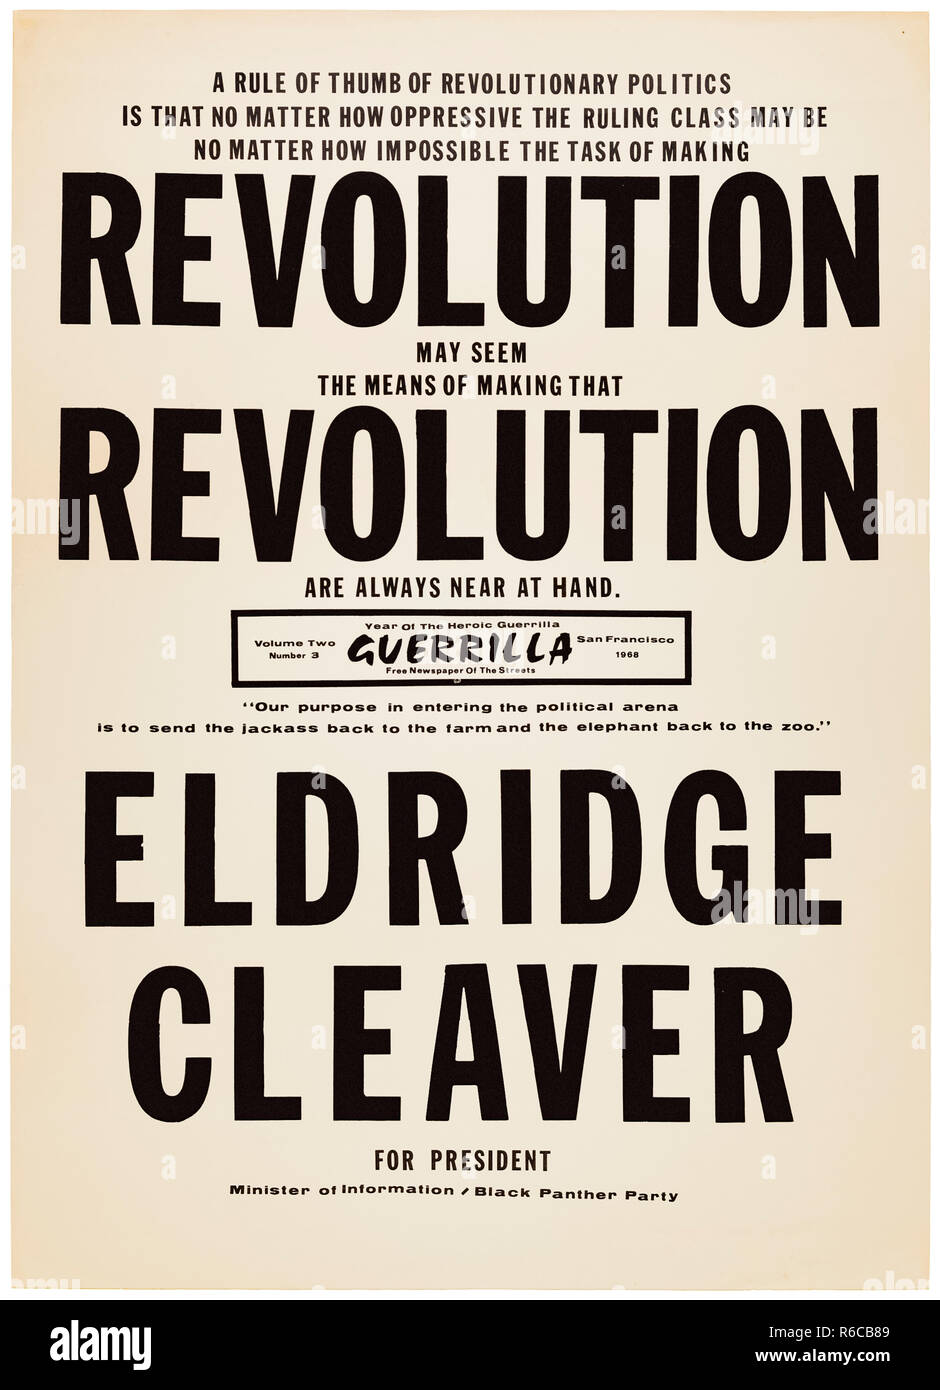 Révolution Révolution 'président' Eldridge Cleaver pour 1968 affiche de campagne présidentielle en tant que candidat pour le Black Panther Party. Voir plus d'informations ci-dessous. Banque D'Images